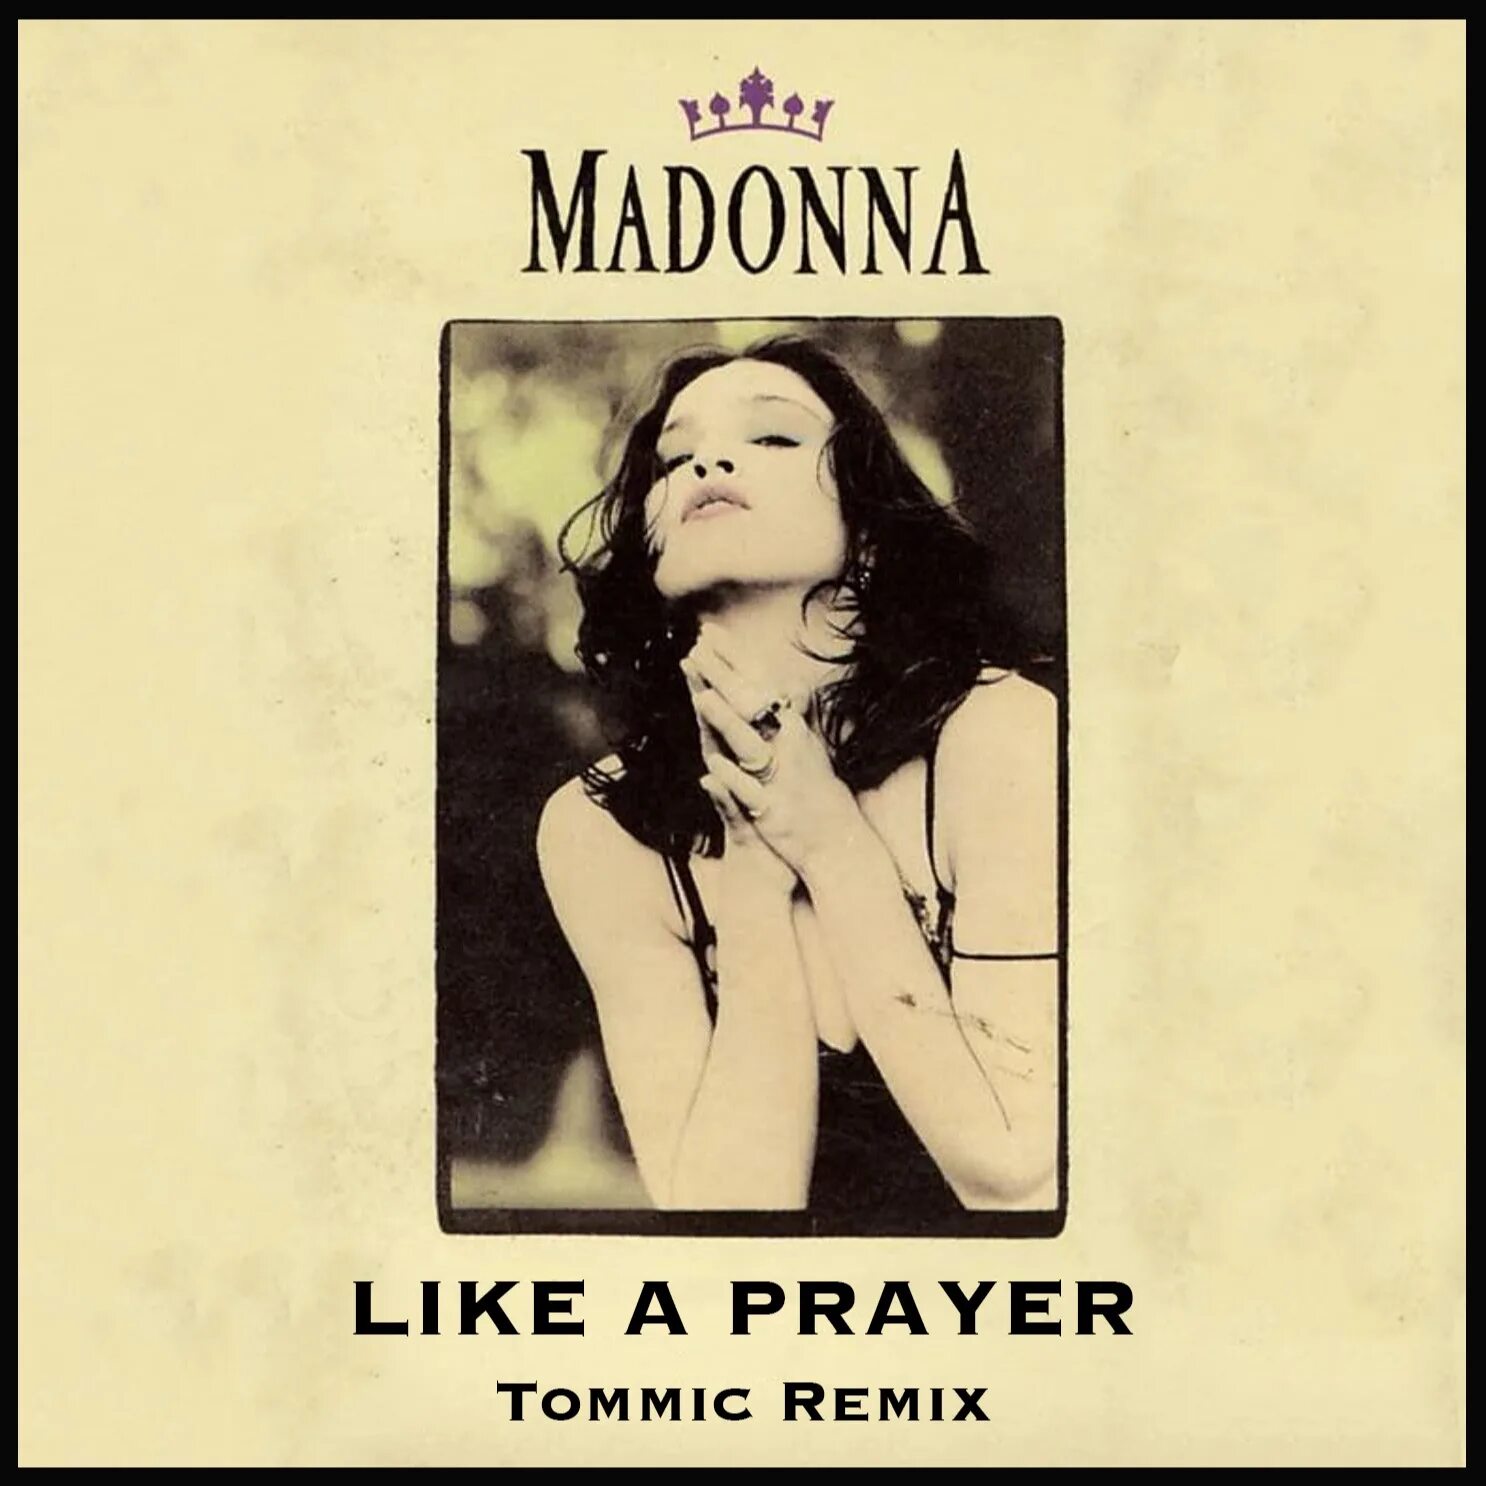 Like madonna песня. Madonna 1989. Madonna 1989 like a Prayer. Madonna like a Prayer обложка. Madonna like a Prayer обложка 1989.